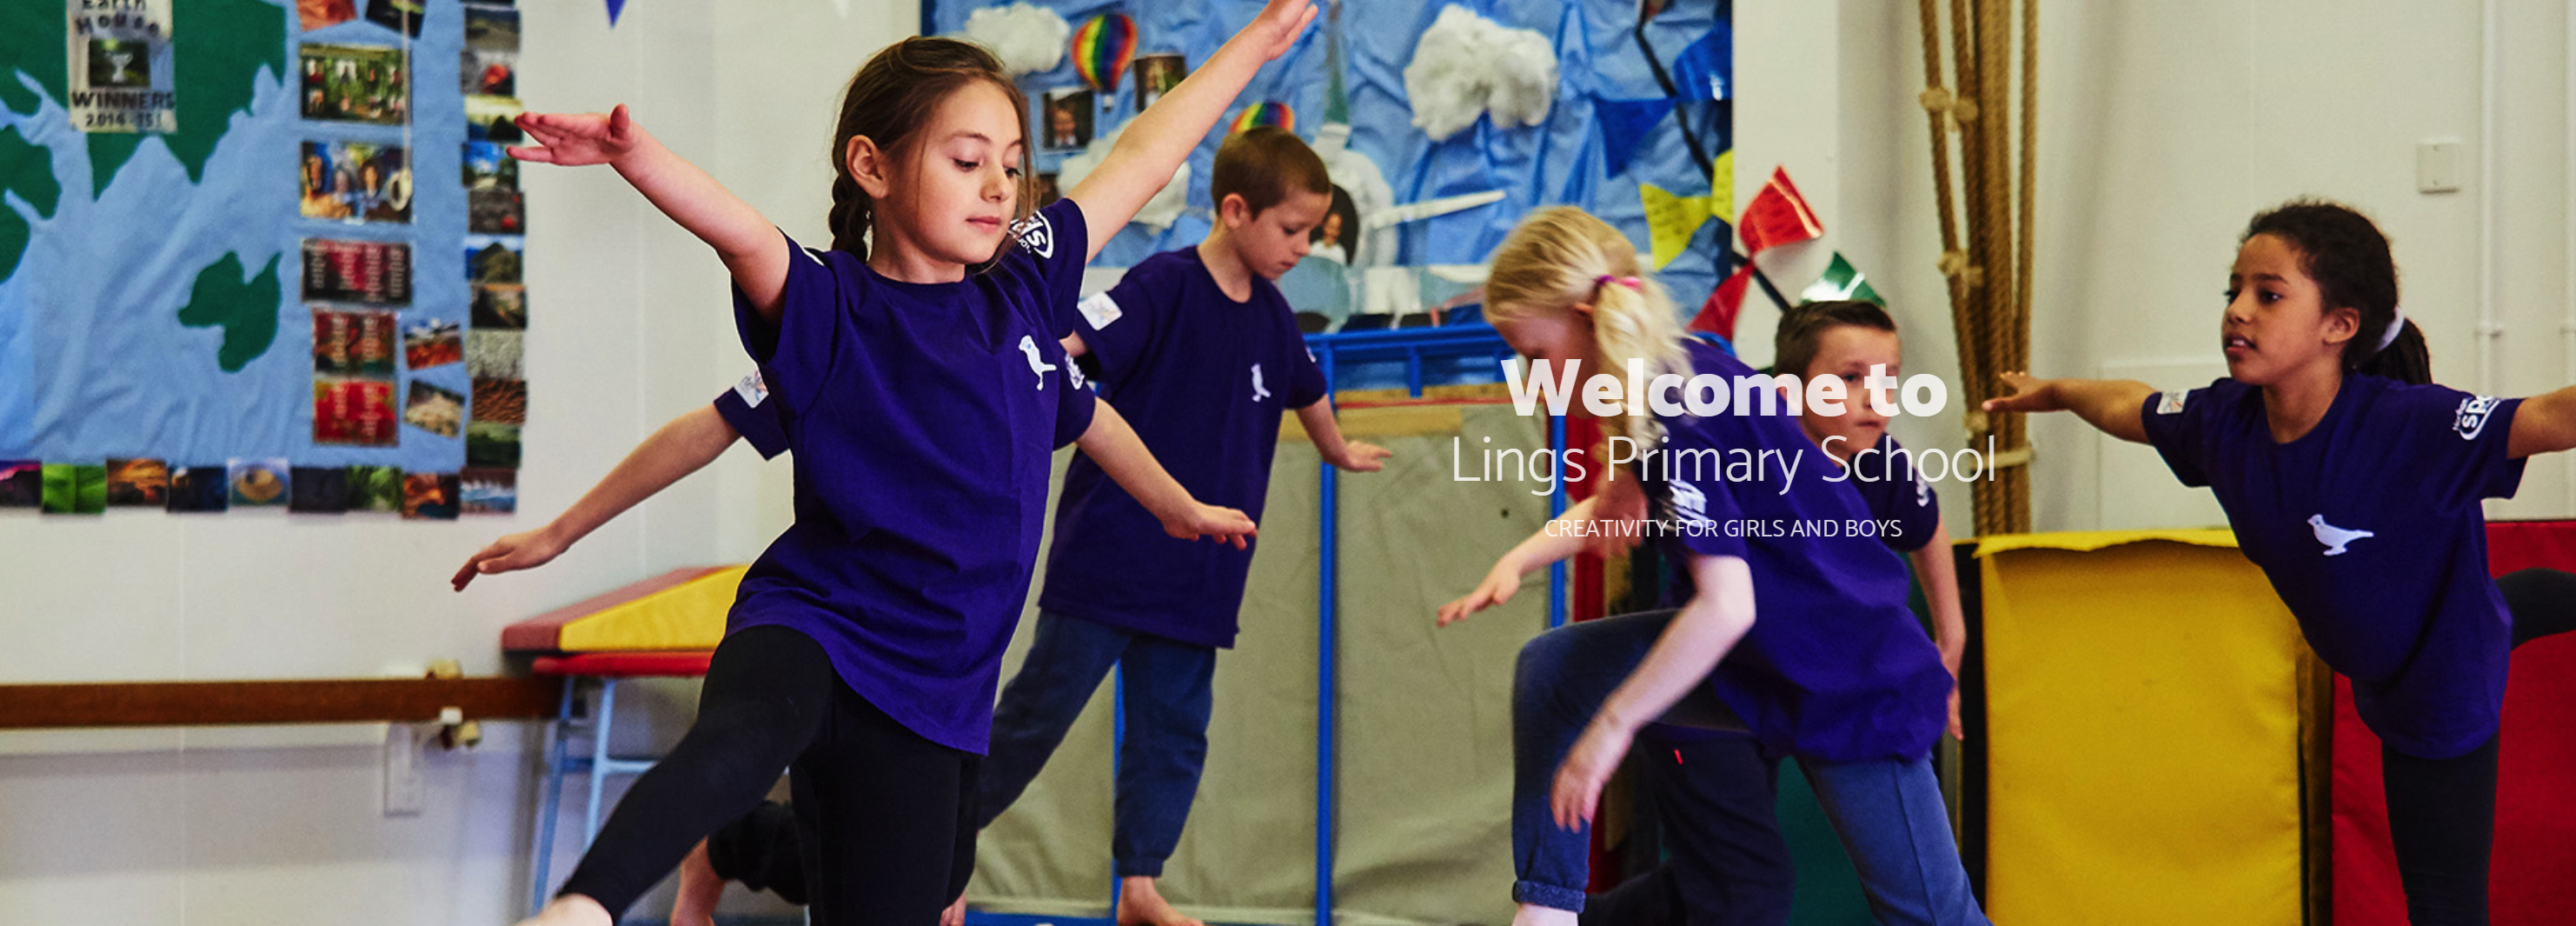 Lings Primary School Blogs